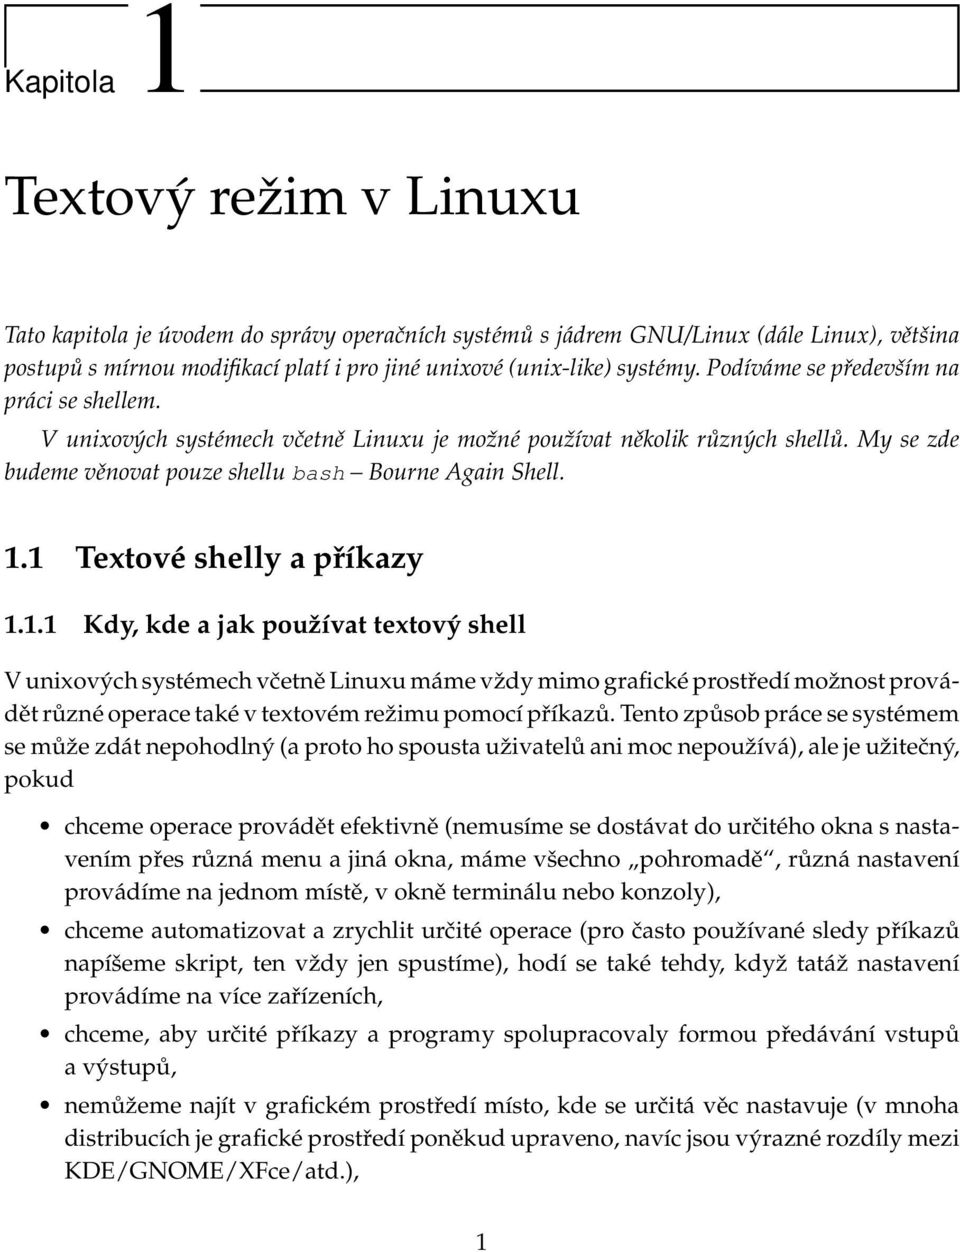 1 Textové shelly a příkazy 1.1.1 Kdy, kde a jak používat textový shell V unixových systémech včetně Linuxu máme vždy mimo grafické prostředí možnost provádět různé operace také v textovém režimu pomocí příkazů.